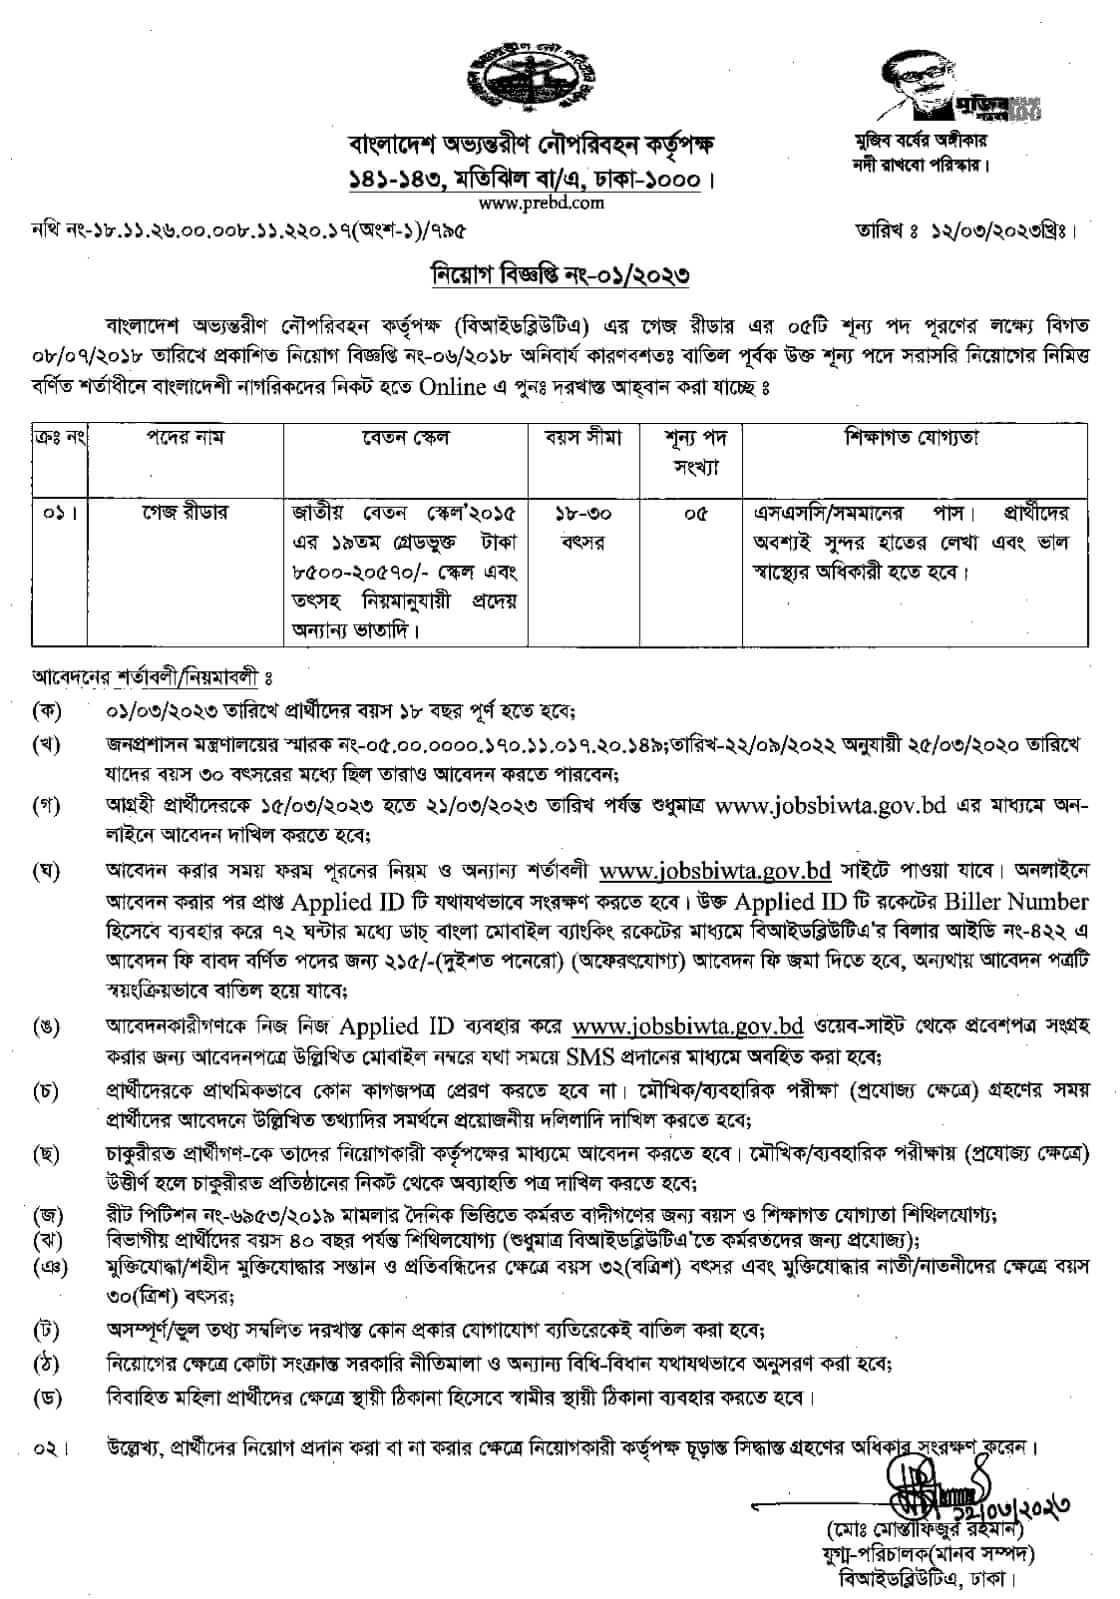 বাংলাদেশ অভ্যন্তরীণ নৌ-পরিবহন কর্তৃপক্ষ - BIWTA নিয়োগ বিজ্ঞপ্তি 2023